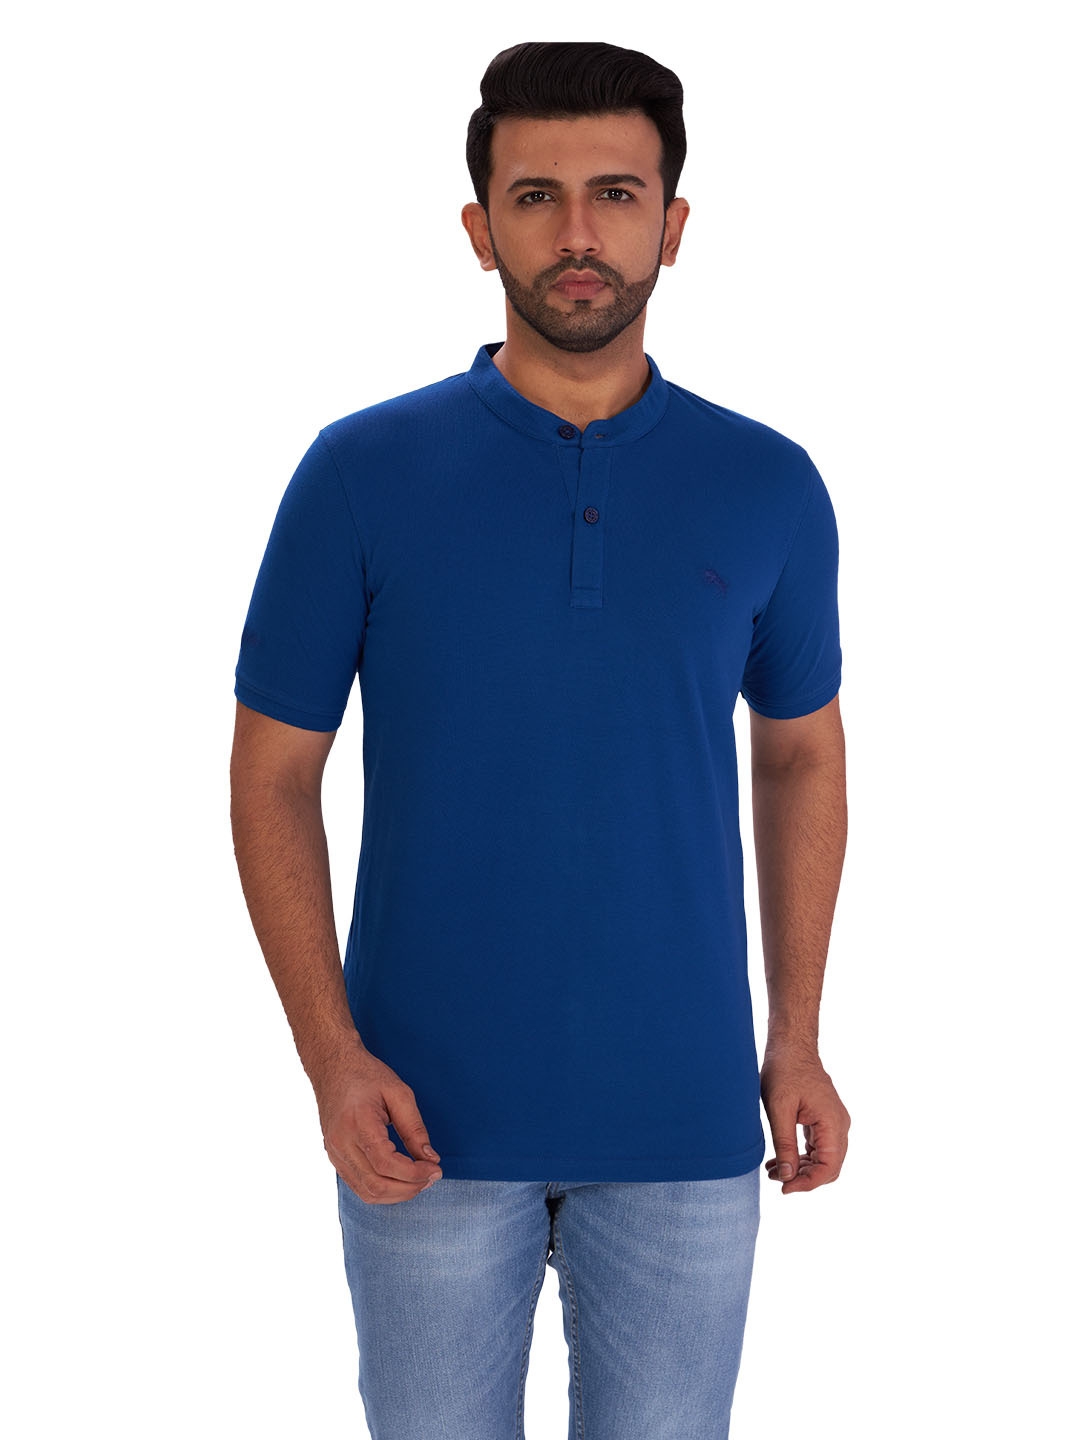 D'cot by Donear Men's Blue Cotton T-Shirts